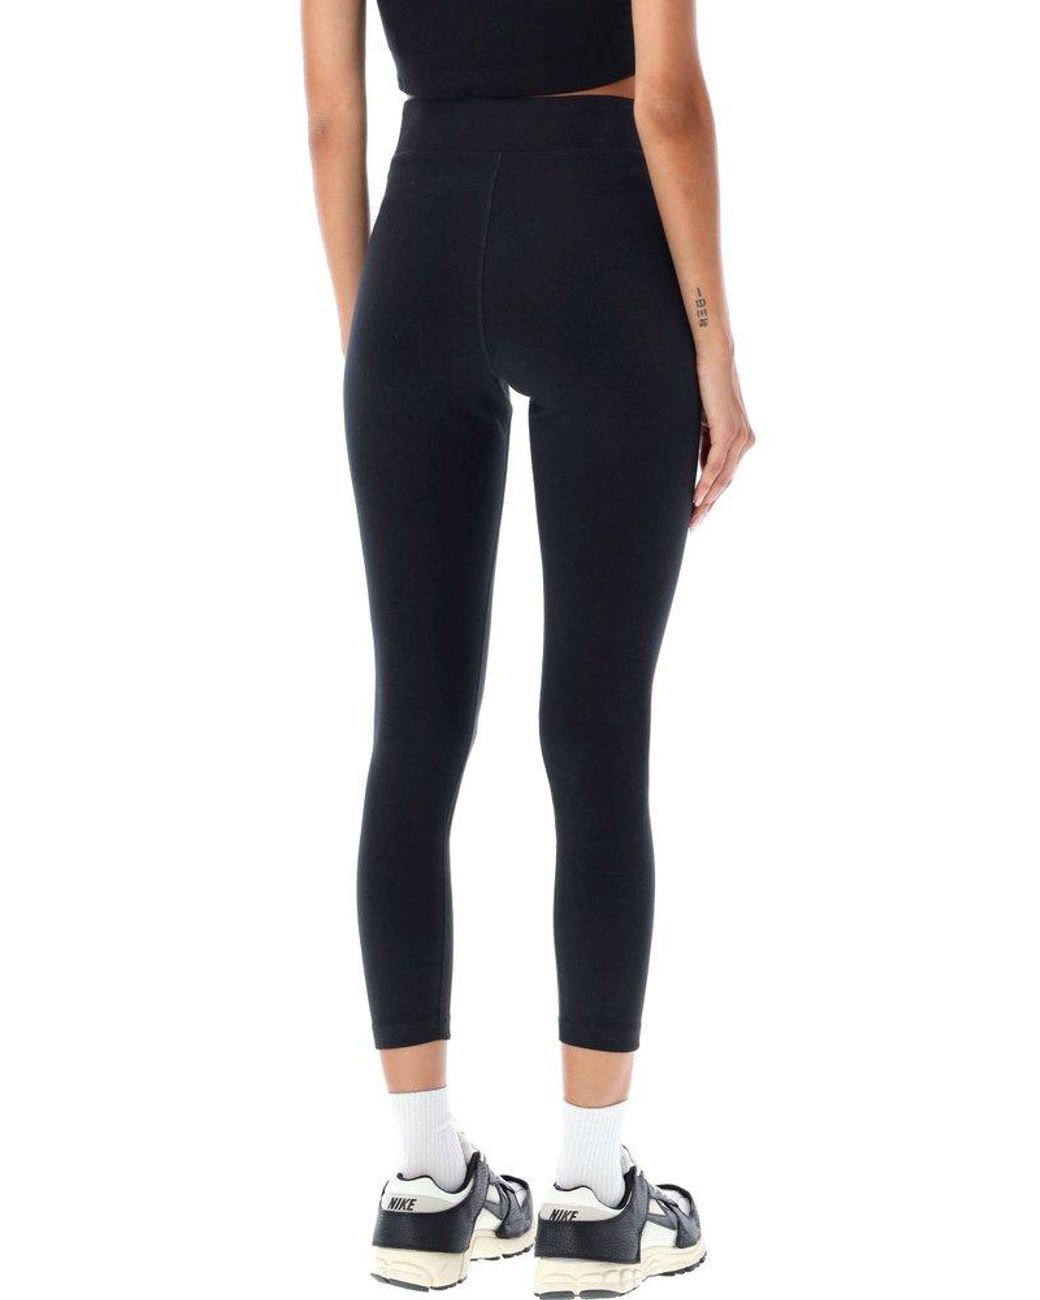 Nike Sportswear Classic High-waisted 7/8 leggings in Black